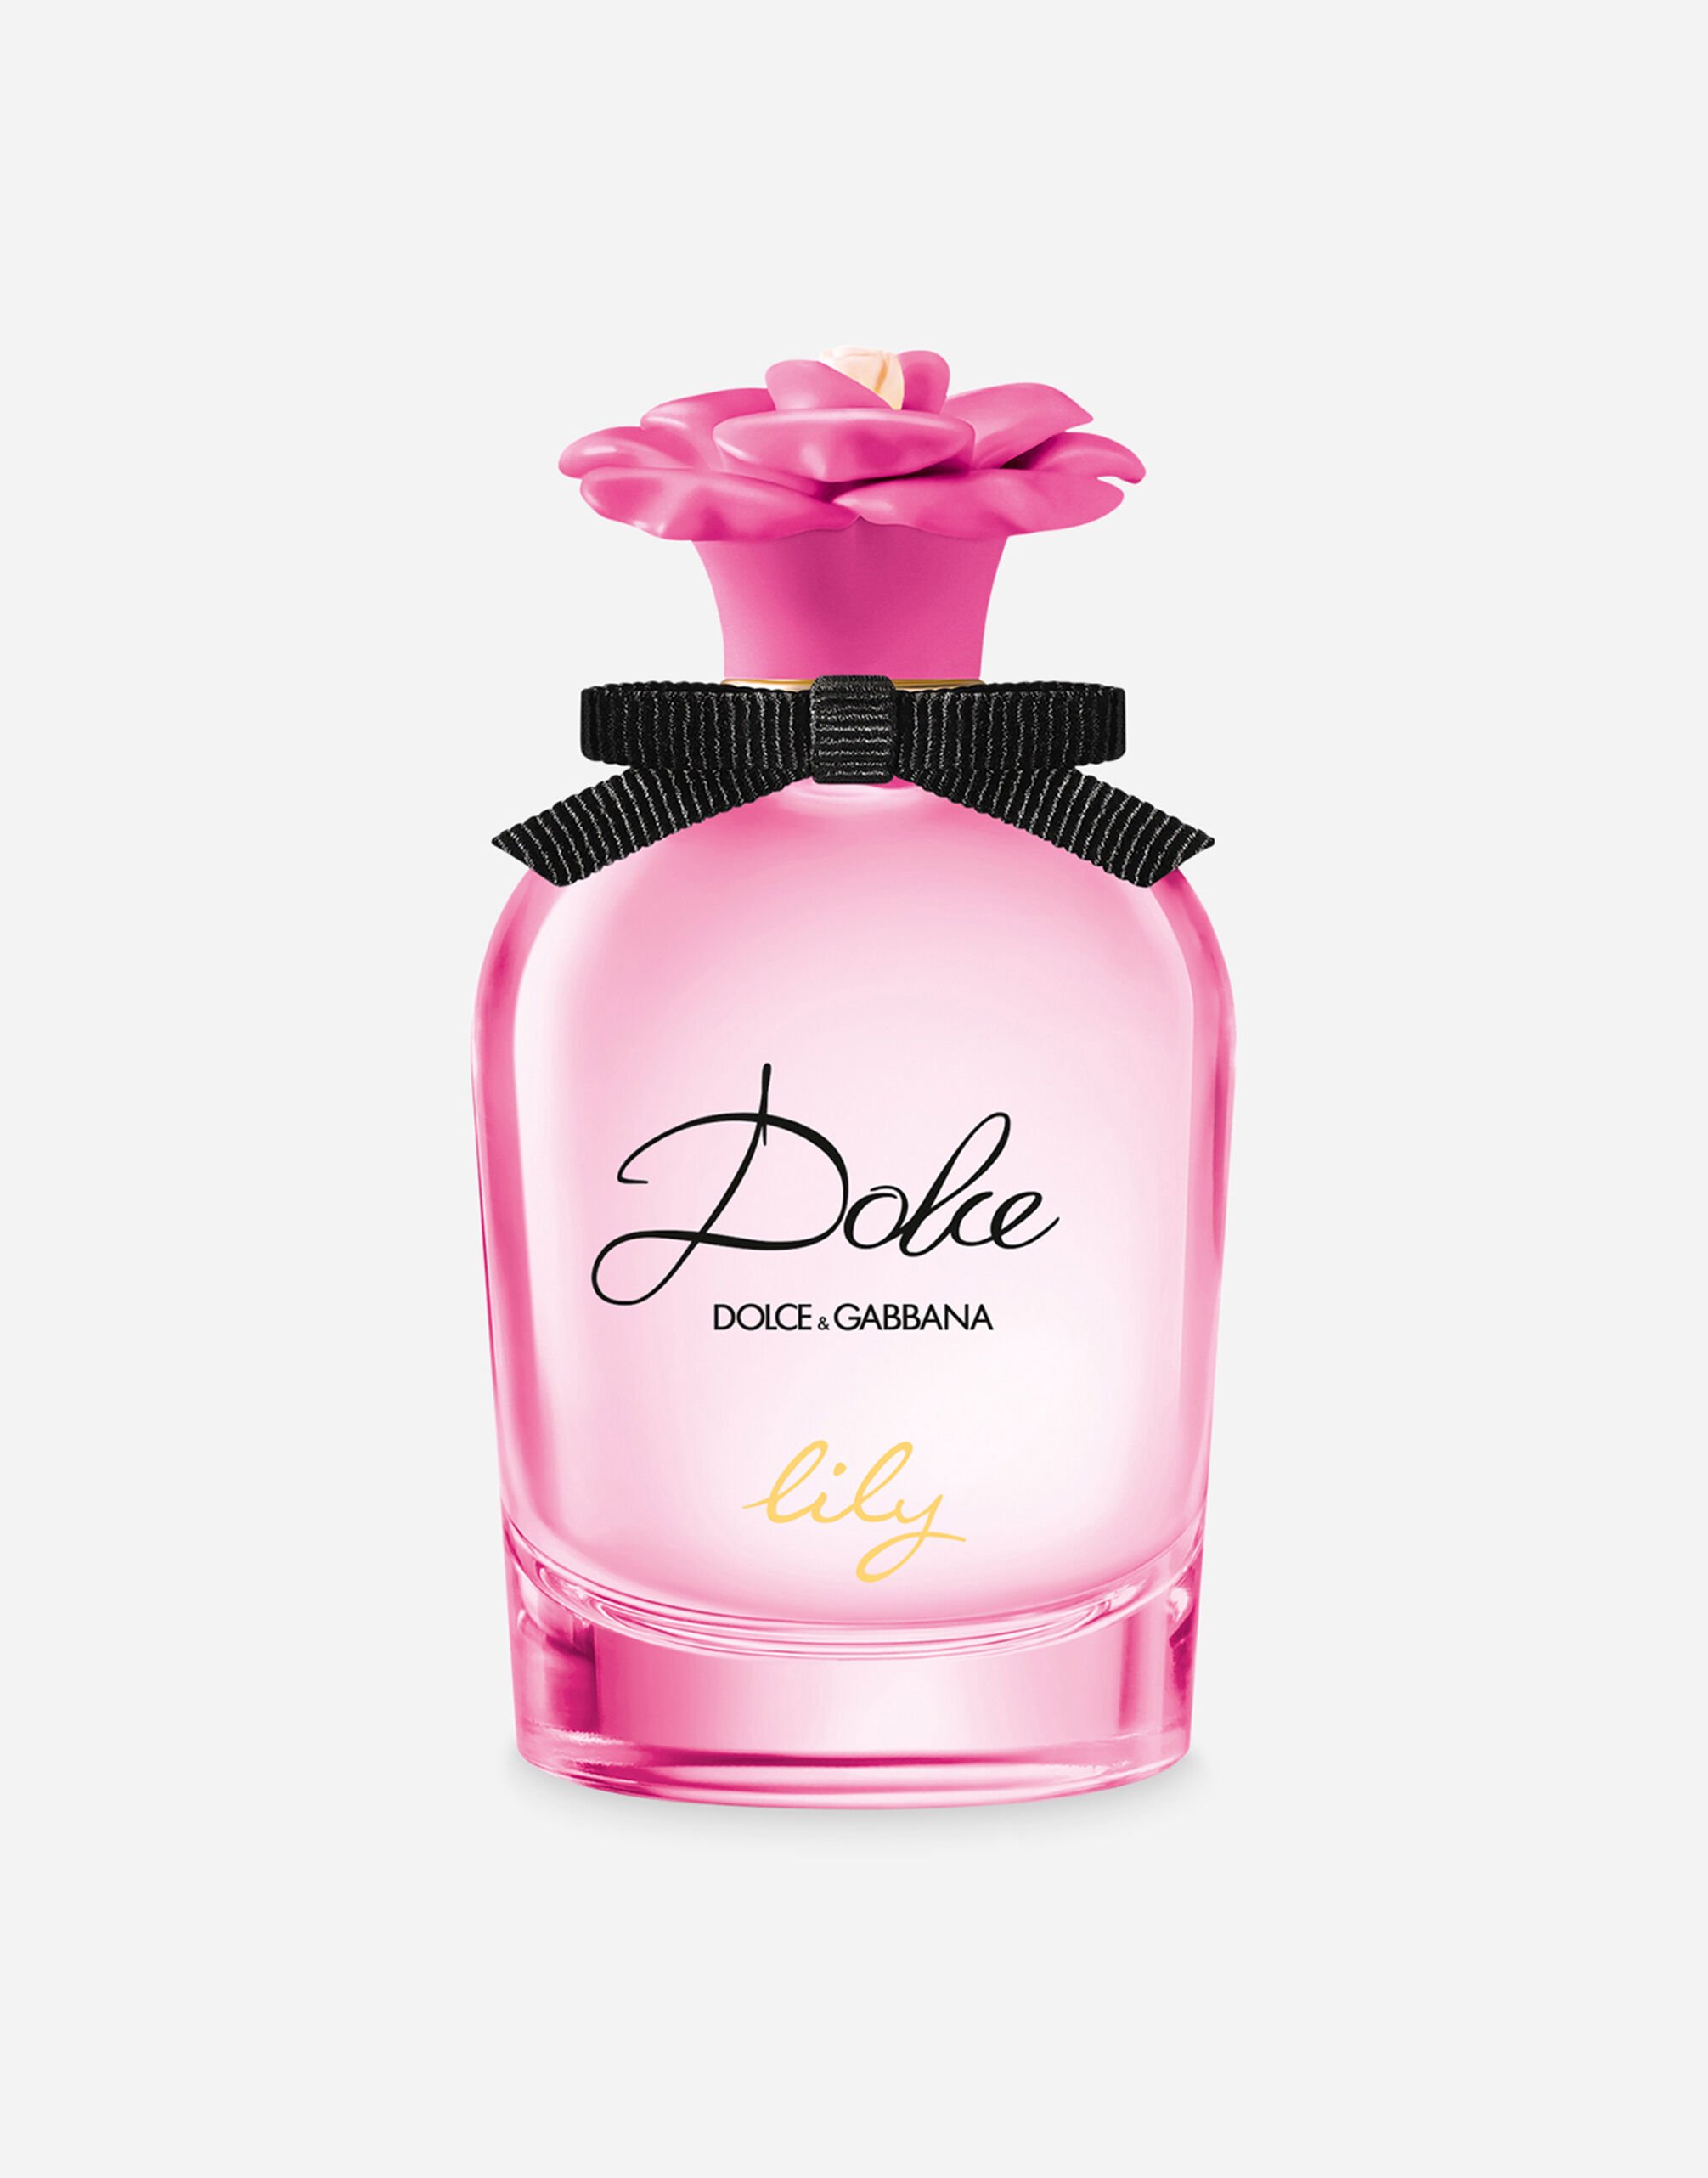 Dolce & Gabbana Dolce Lily Eau de Toilette - VT0063VT000